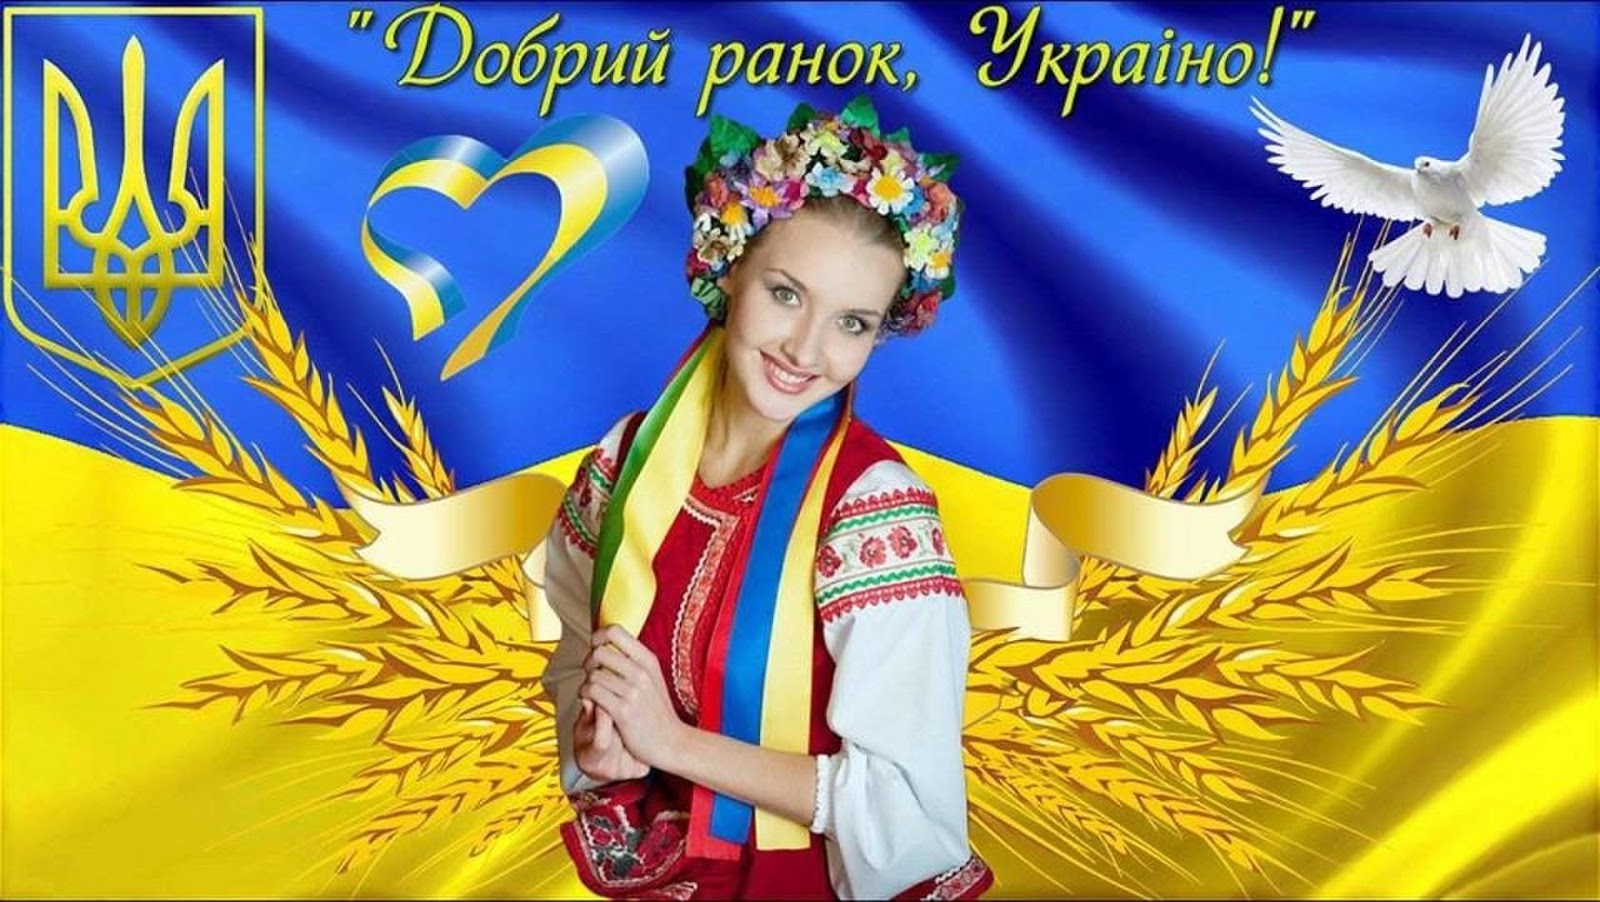 Буде з україна. Добрый Ранок Украина. Приветствие на украинском. Доброго ранку на украинском открытка. Доброго ранку Україно открытка.